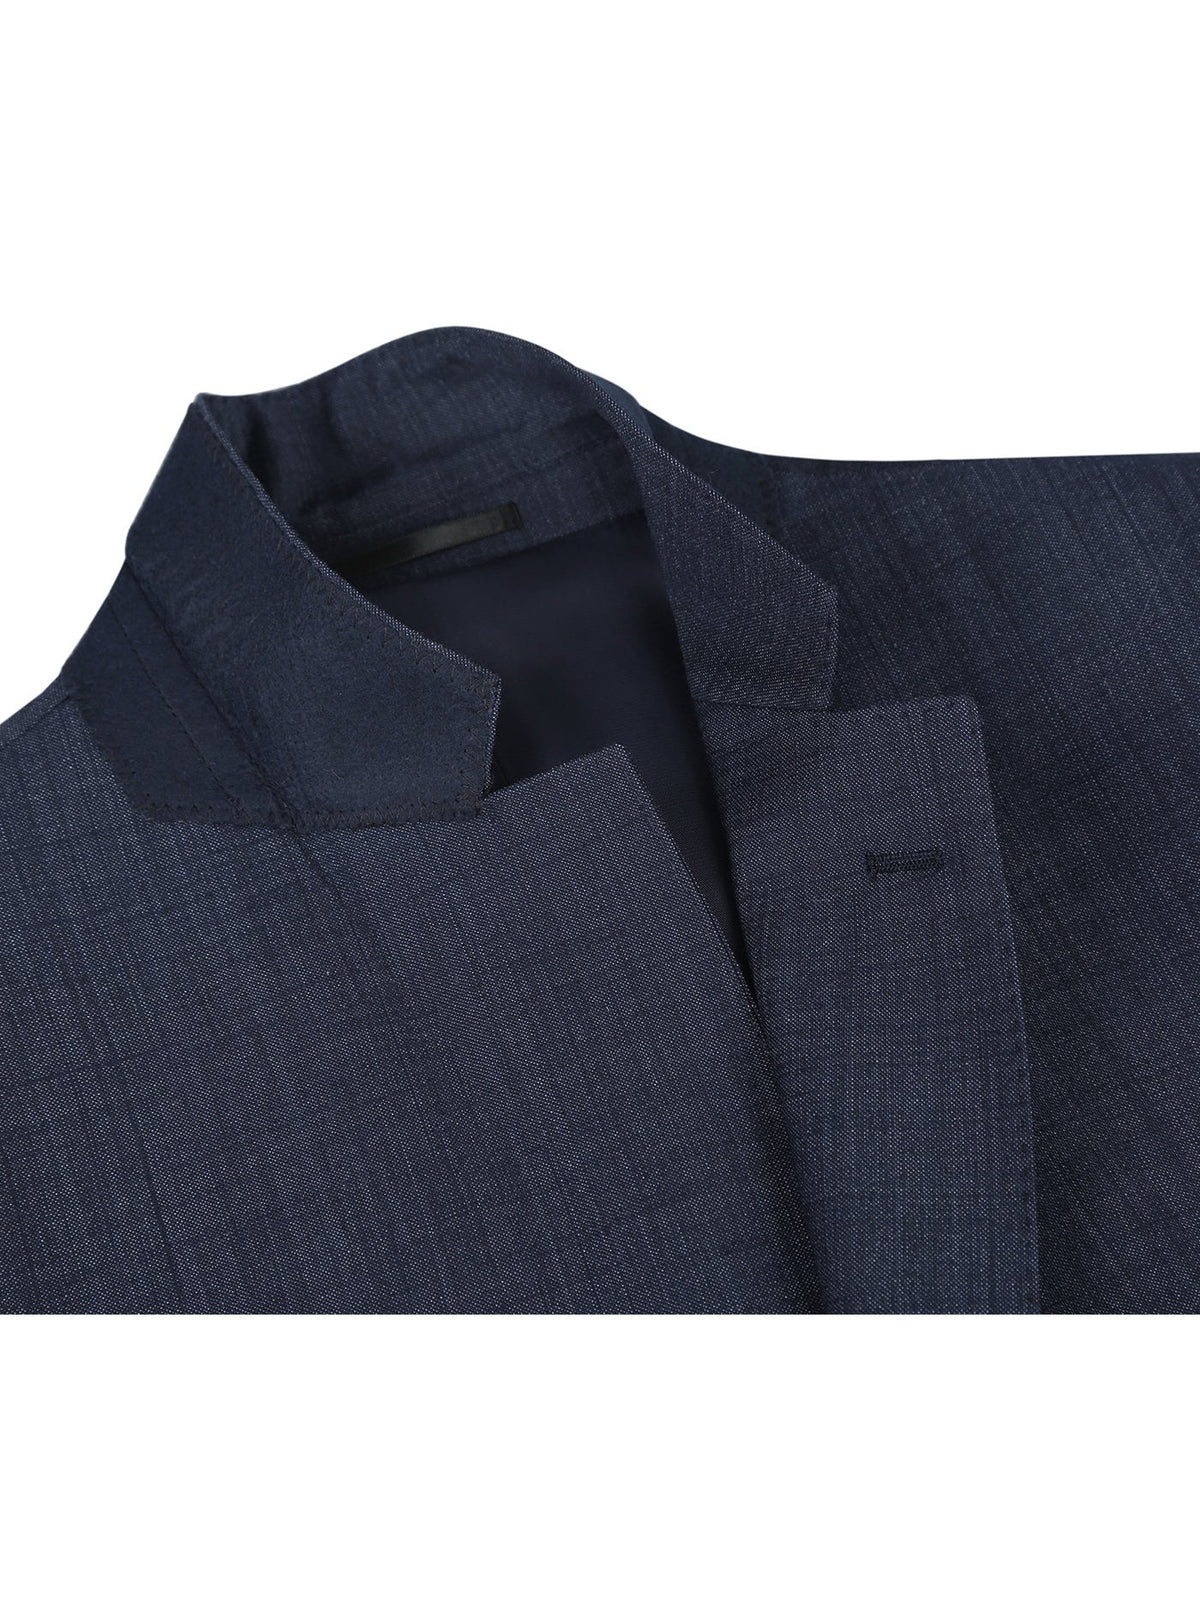 Men&#39;s Two Piece Classic Fit Wool Blend Suit